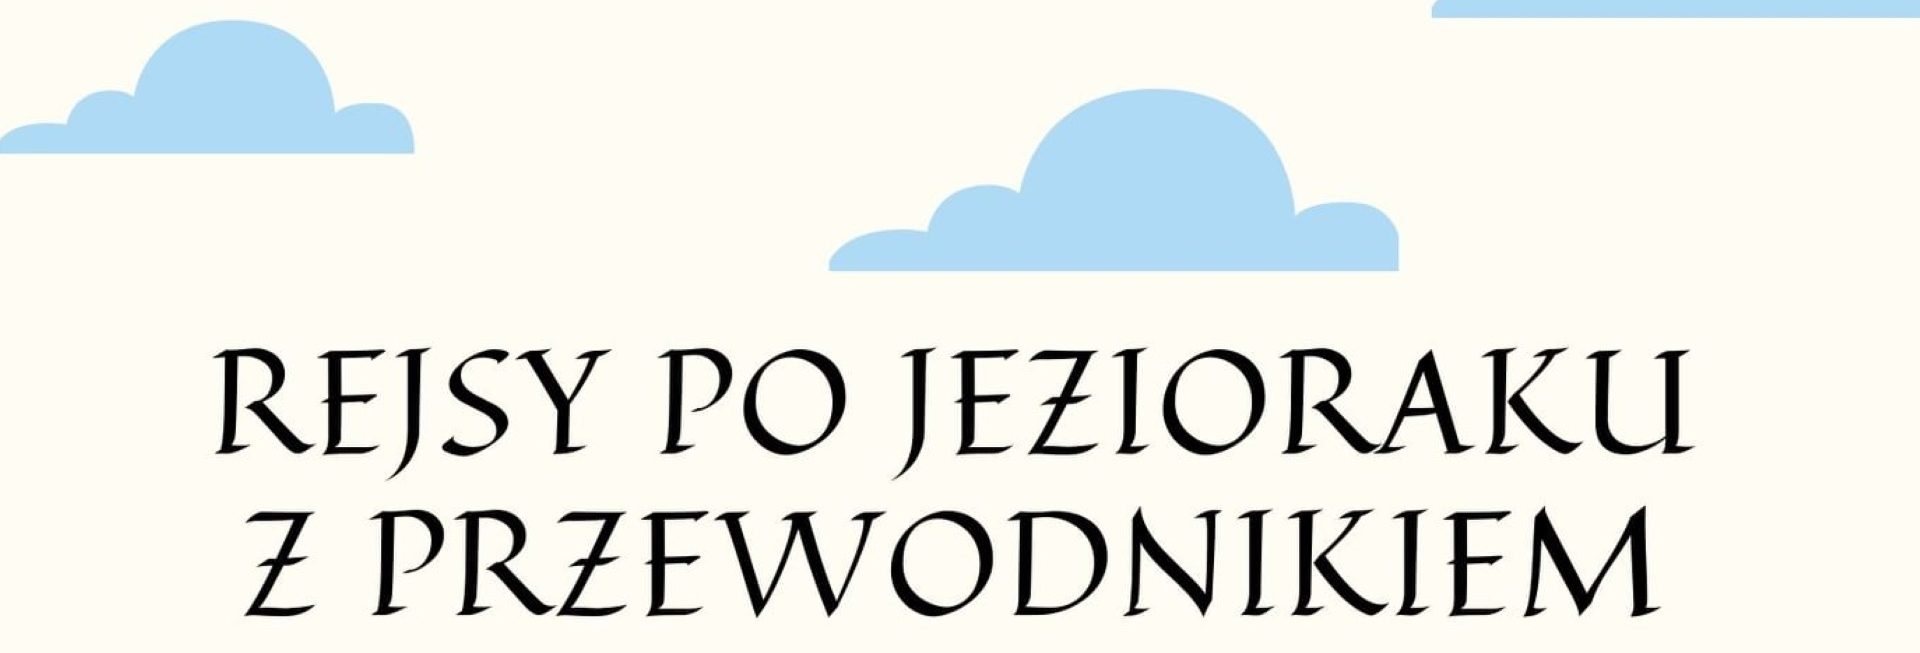 Plakat graficzny zapraszający do Iławy na cotygodniowy rejs po Jezioraku z Przewodnikiem - Iława 2021. Na plakacie na białym tle napis "Rejsy po Jezioraku z Przewodnikiem".